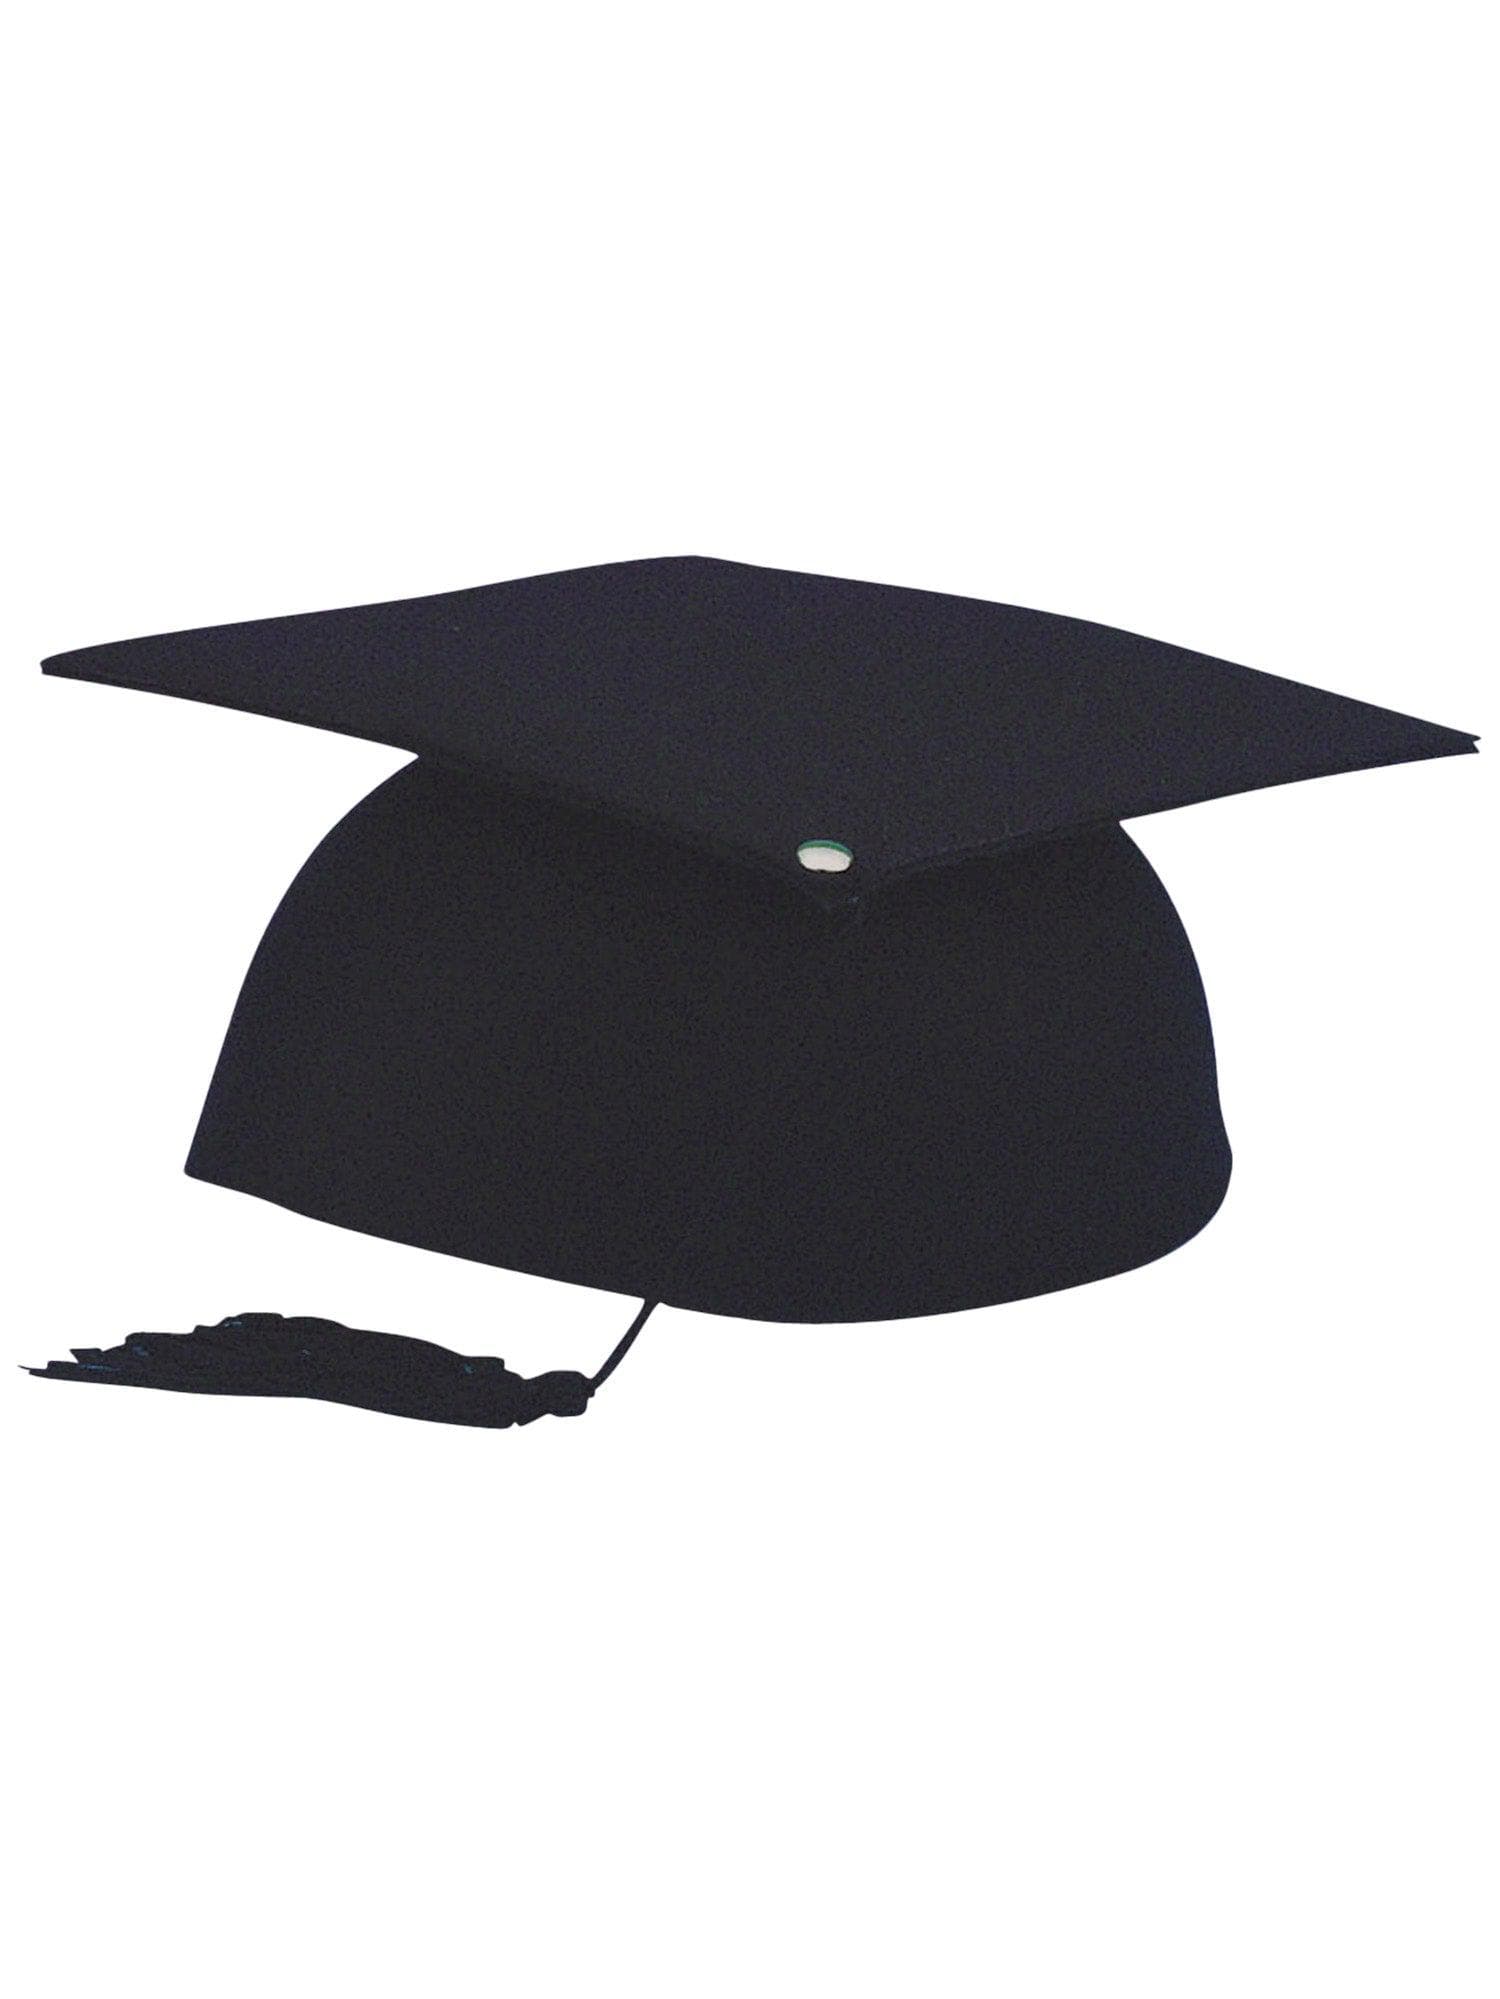 Black Graduation Adult Cap - costumes.com